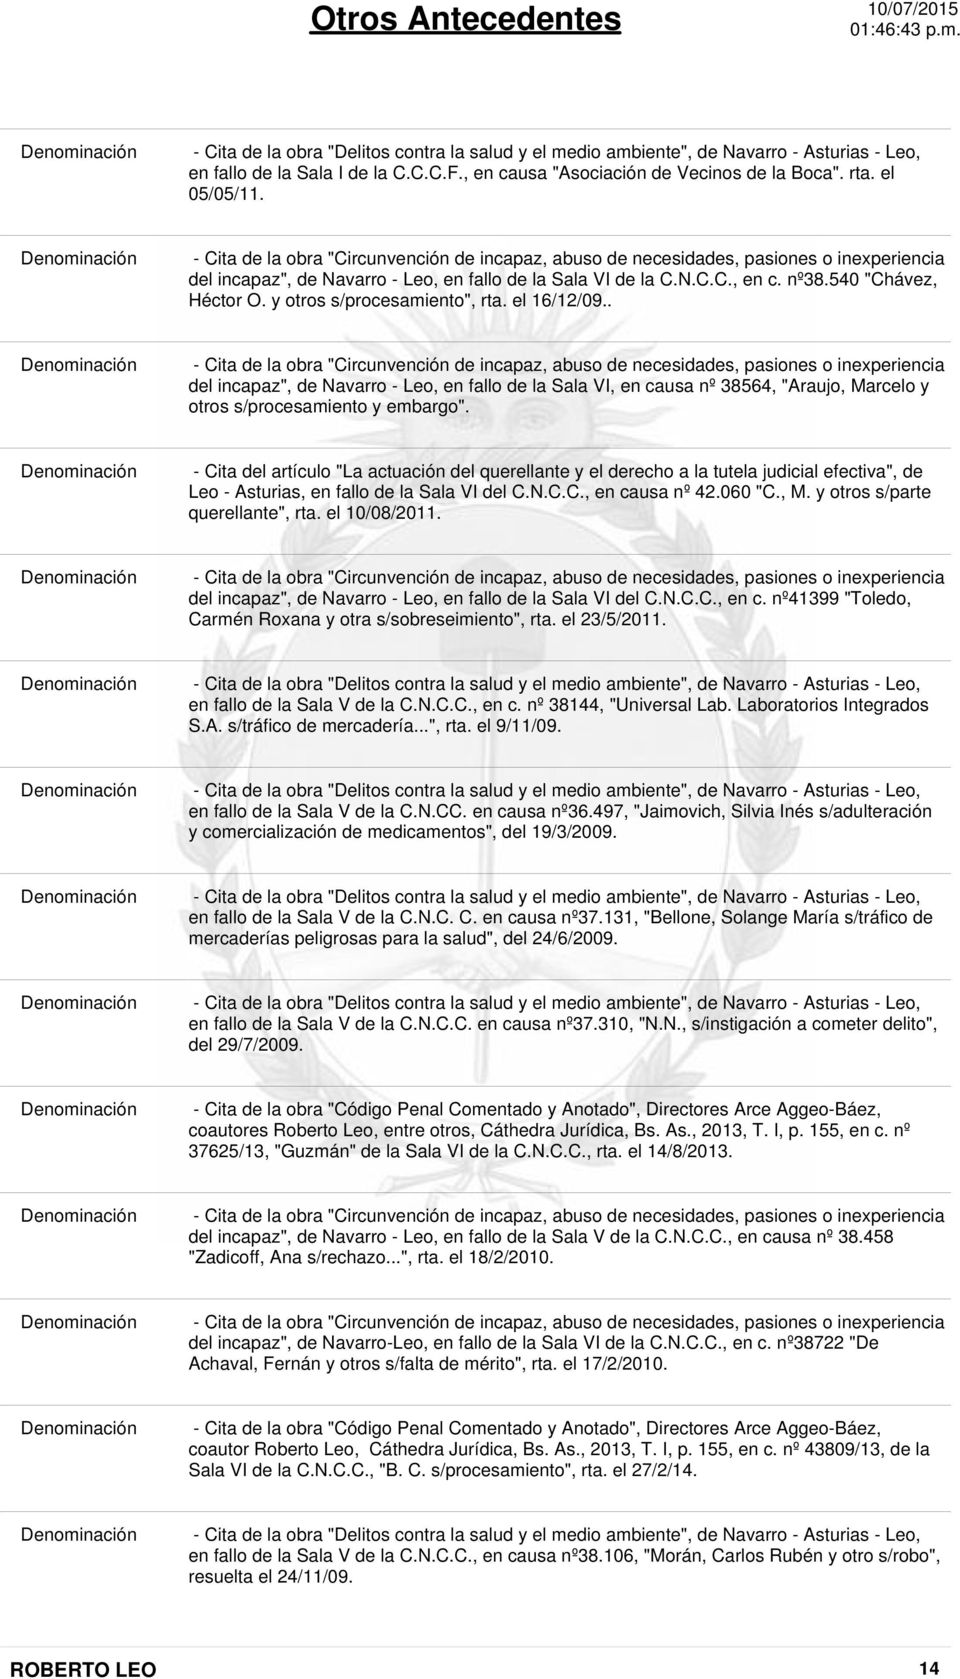 540 "Chávez, Héctor O. y otros s/procesamiento", rta. el 16/12/09.